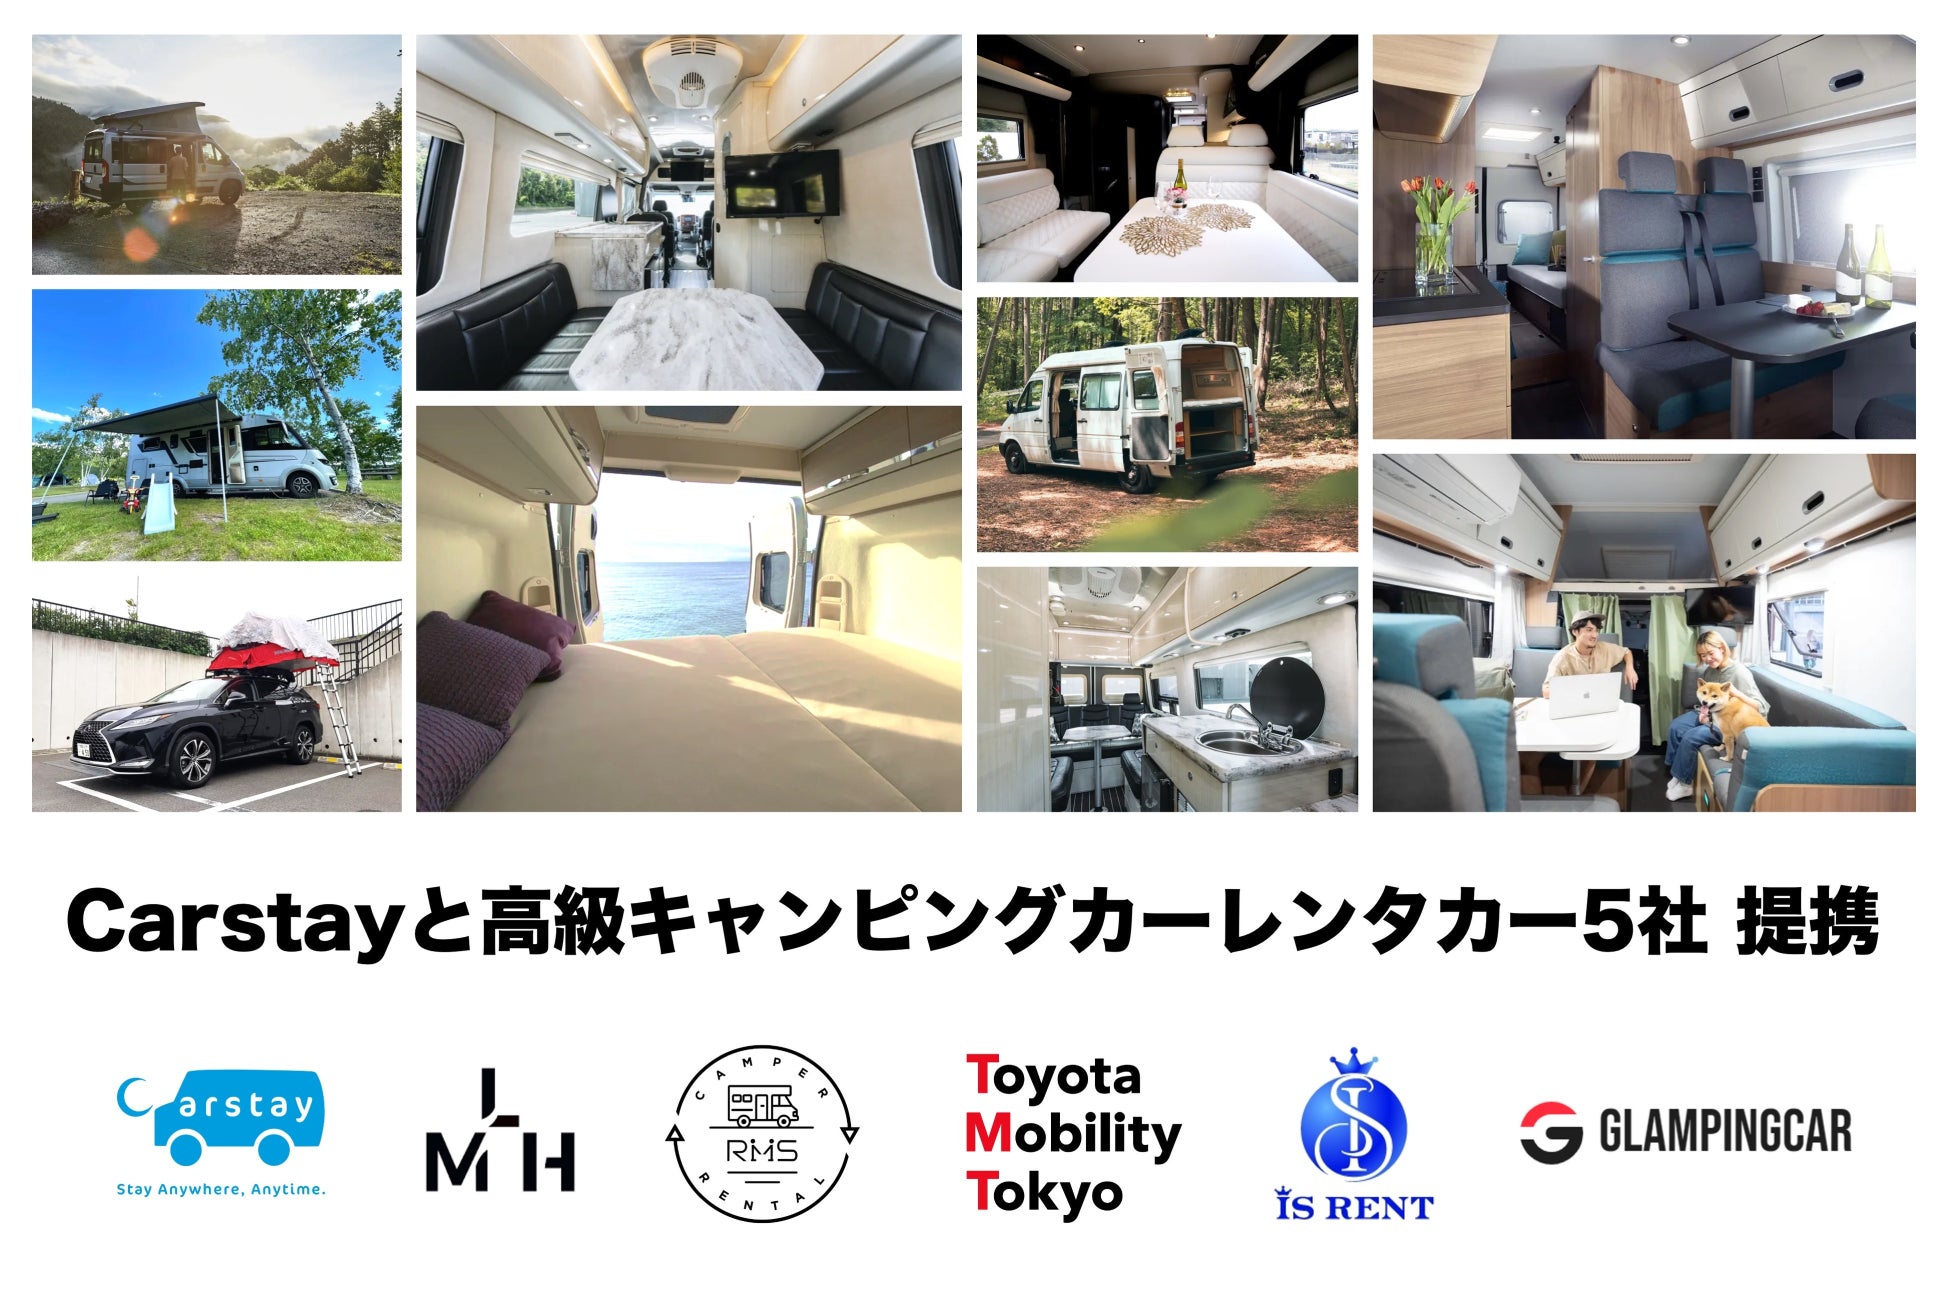 【ホテルマネージメントジャパン】「ホテルJALシティ関内 横浜」がホテルグループに新規加盟